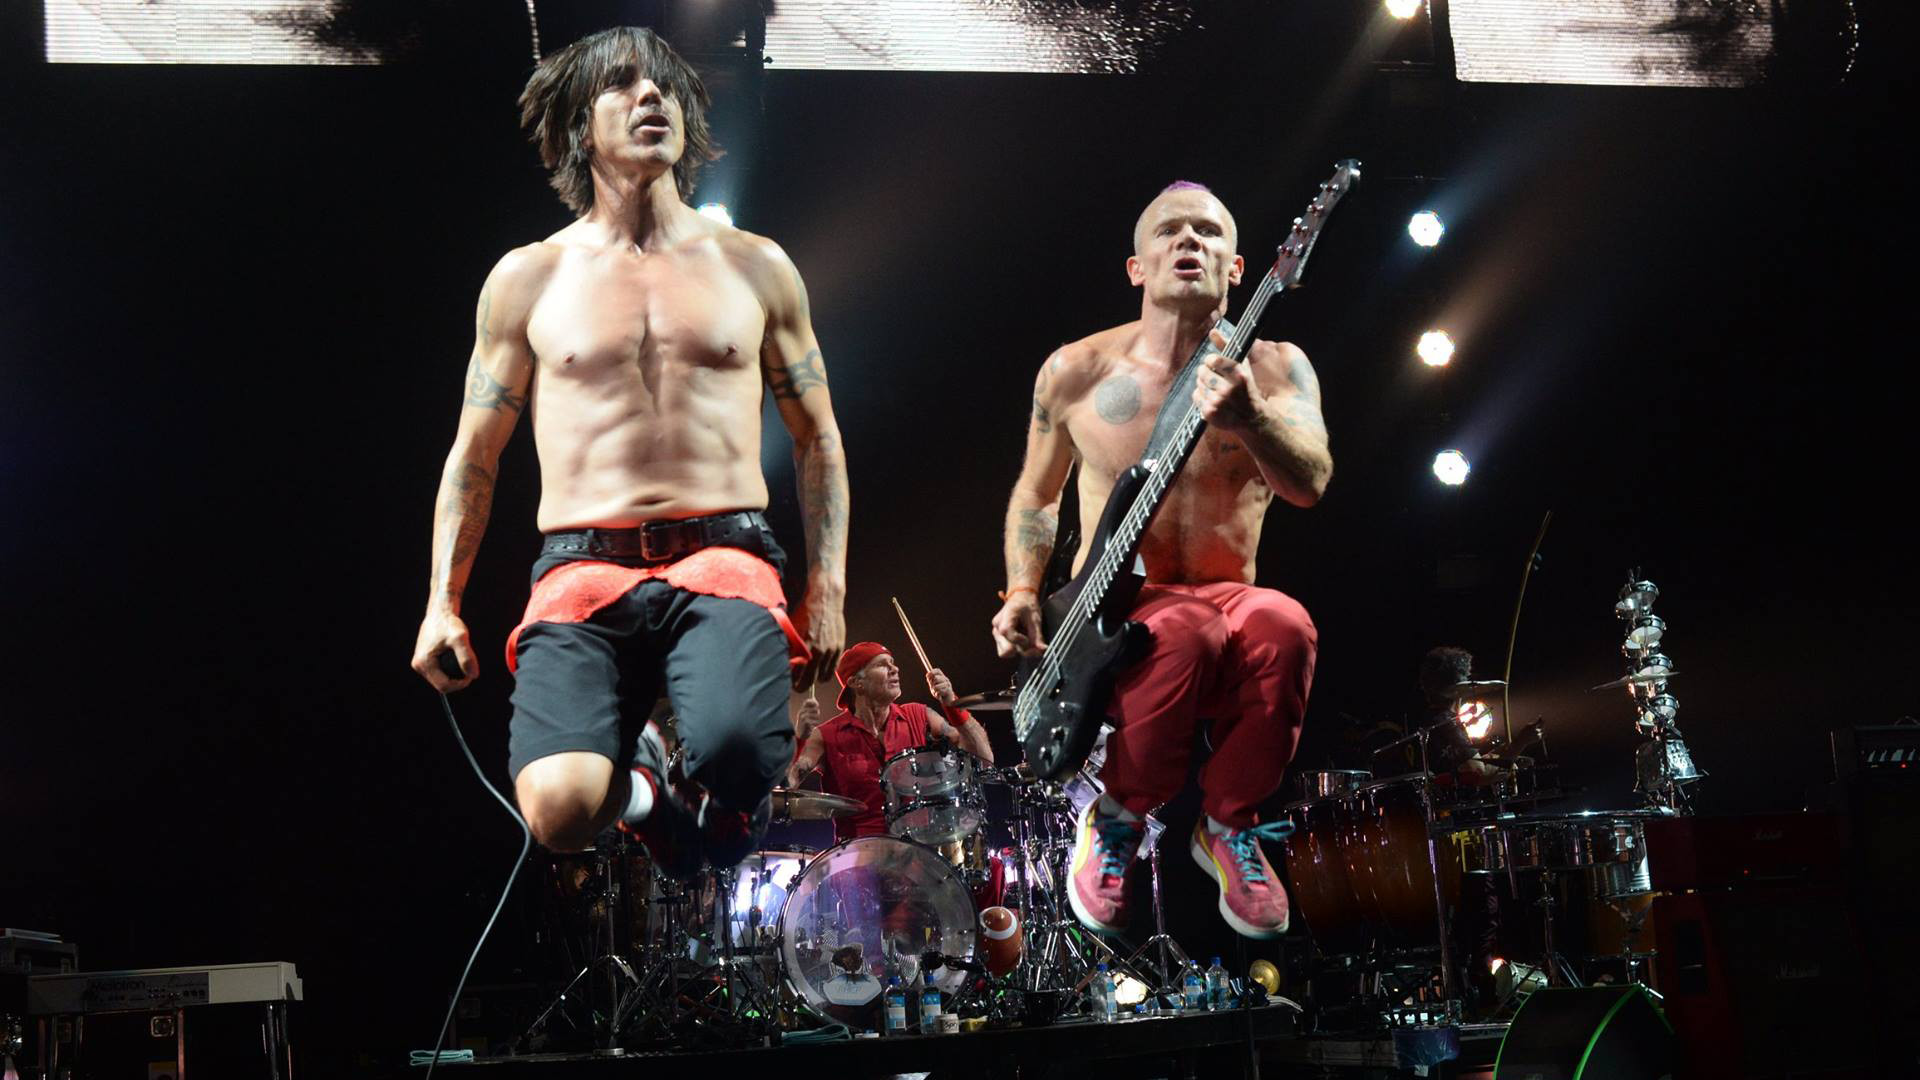 Red Hot Chili Peppers spielen Rockmusik auf der Bühne bei einem Konzert